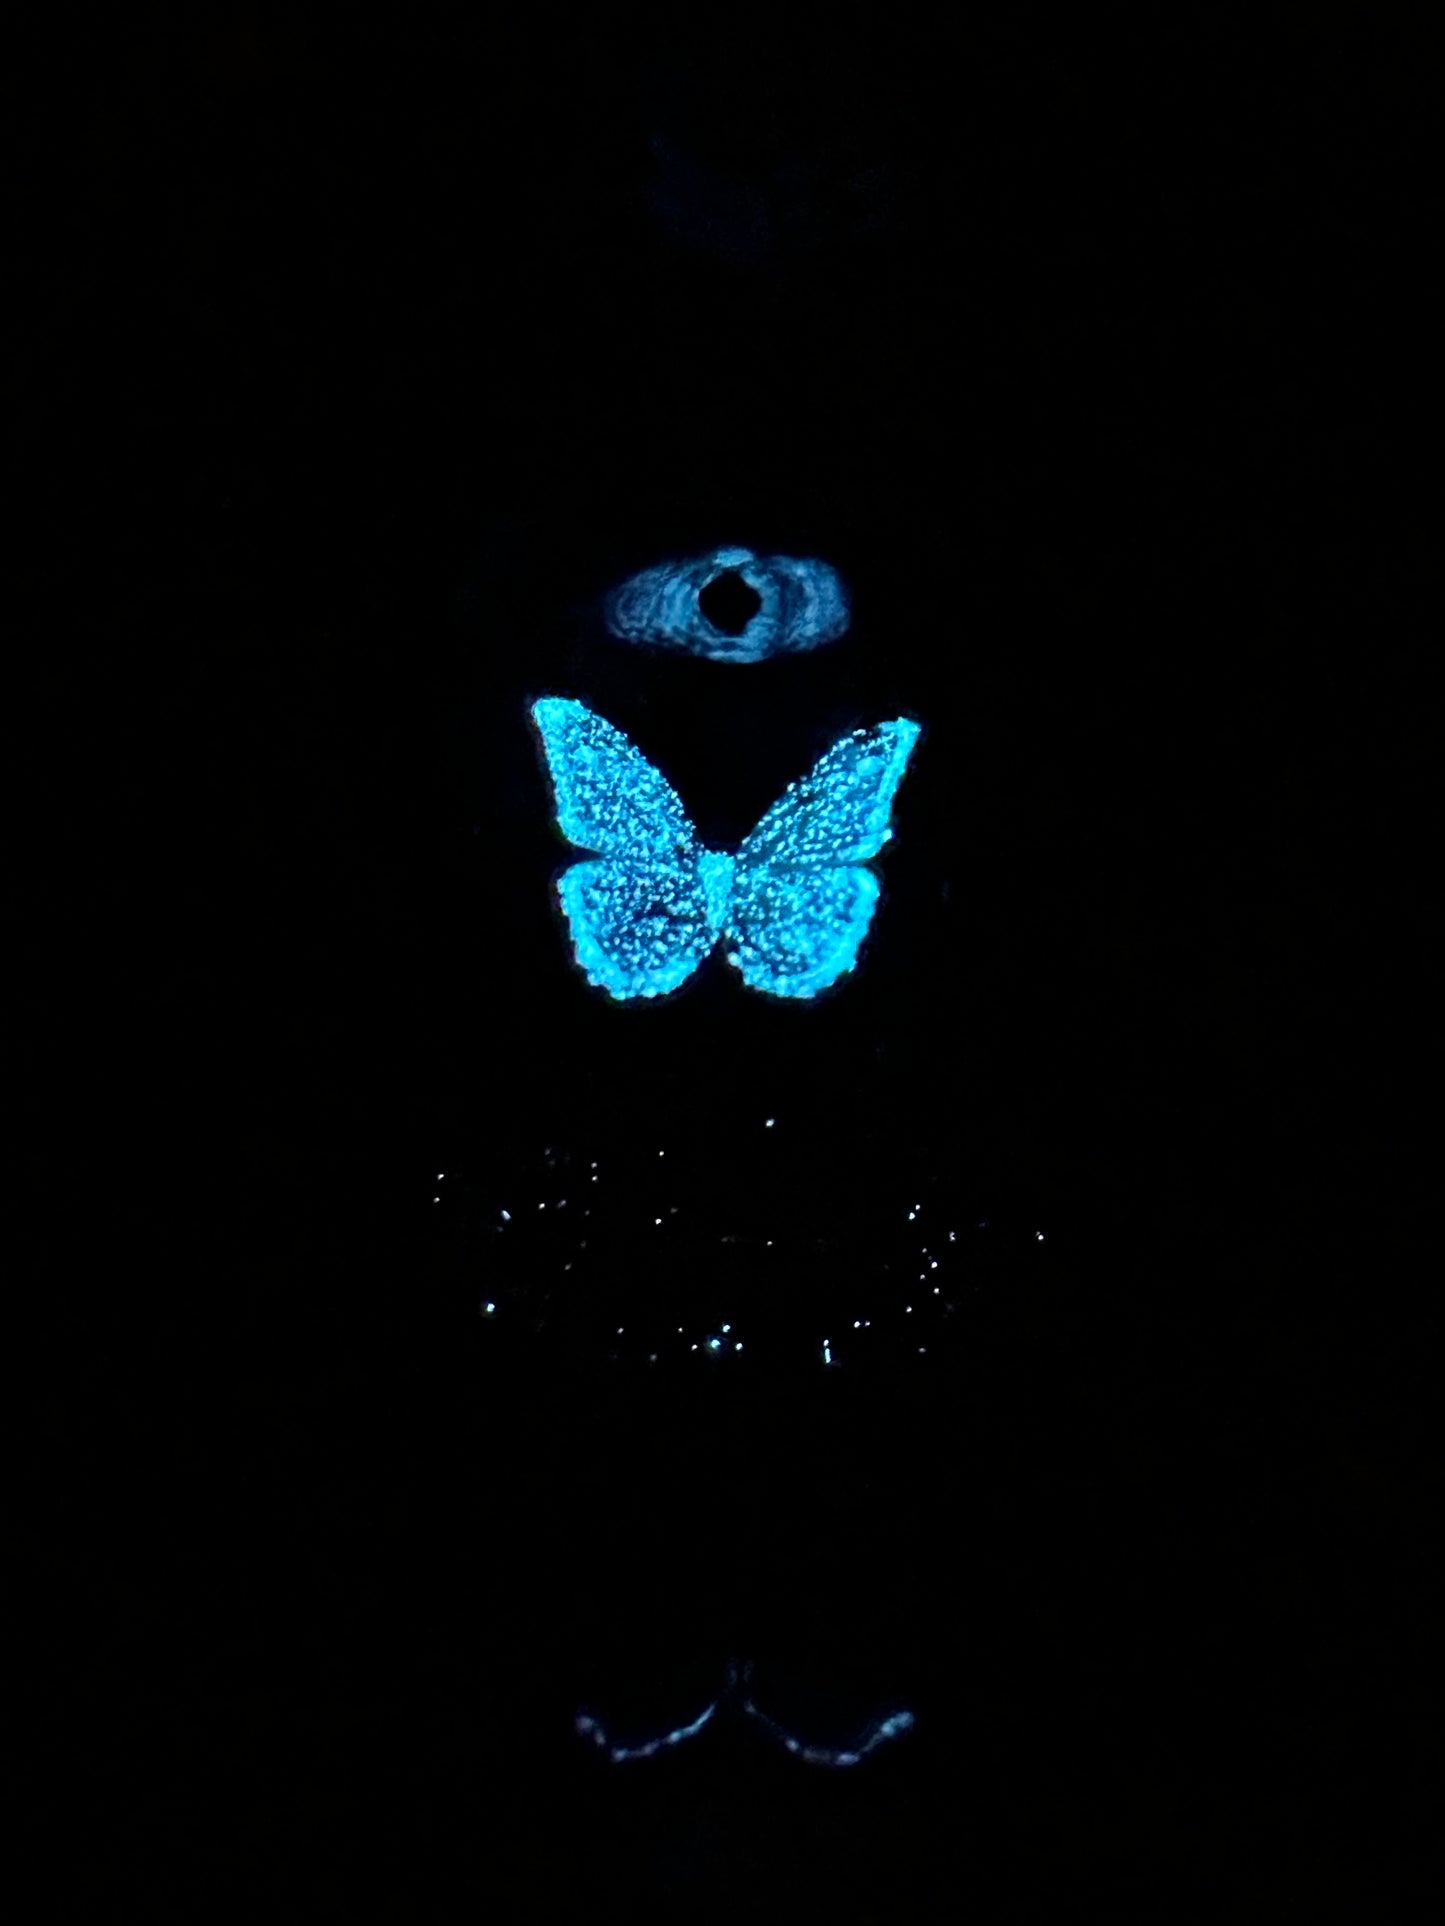 Miniature Glow-in-the-Dark Butterfly Specimen